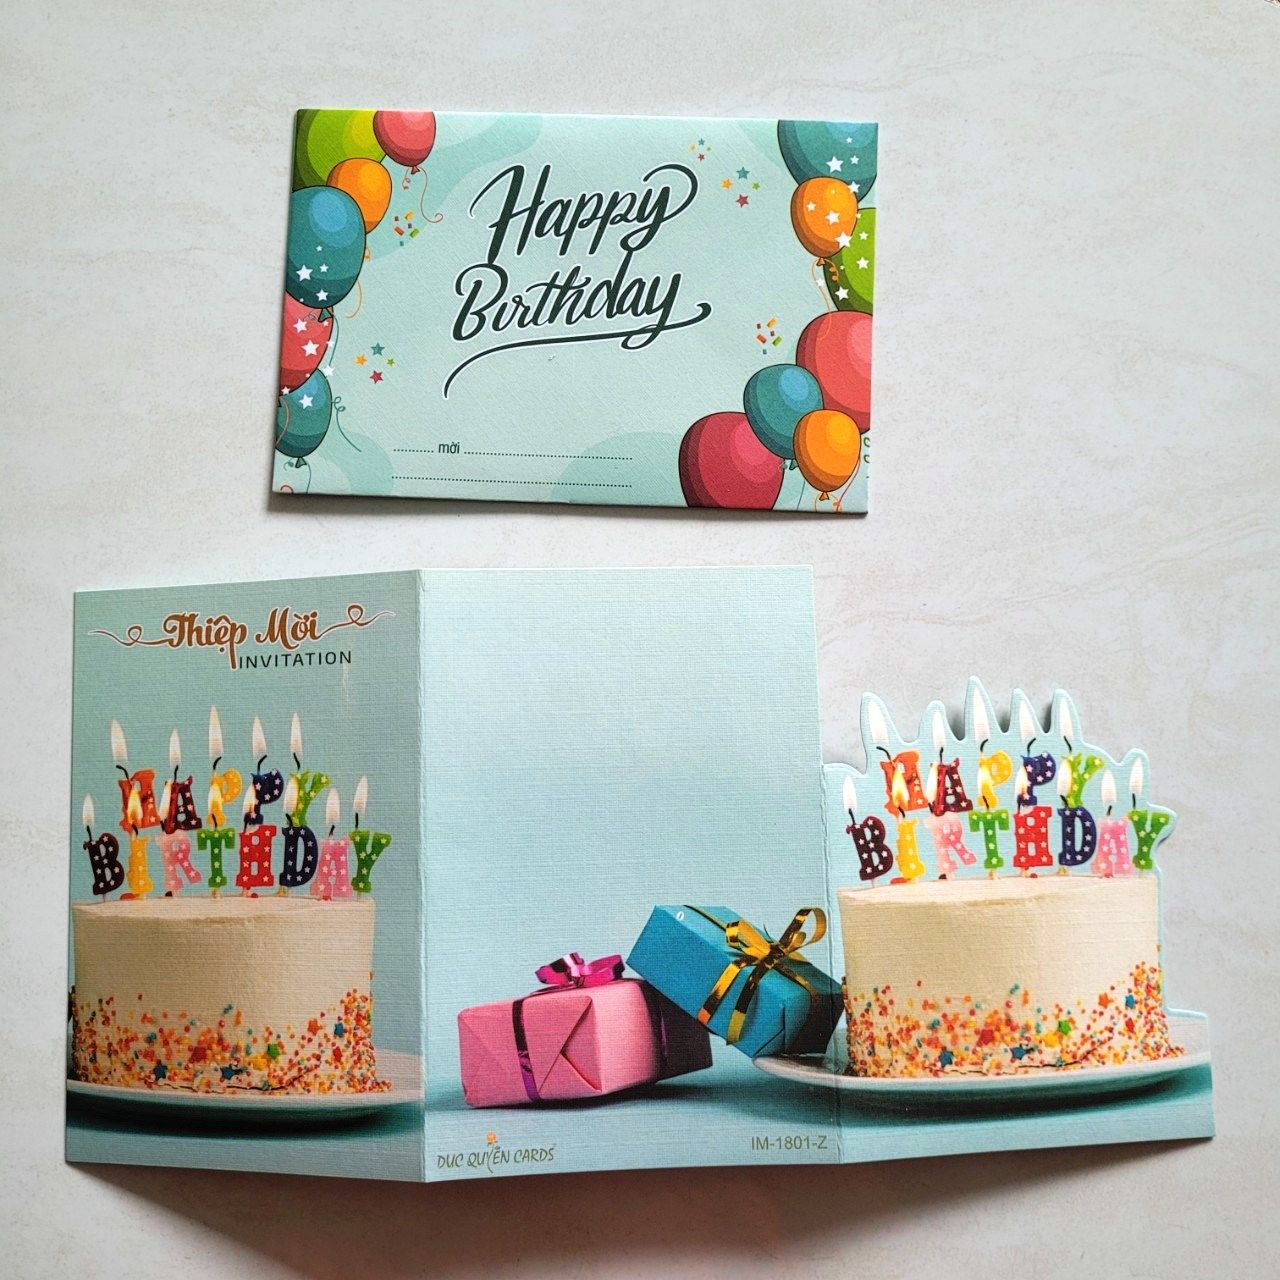  5 thiệp mời sinh nhật hình bánh kem 